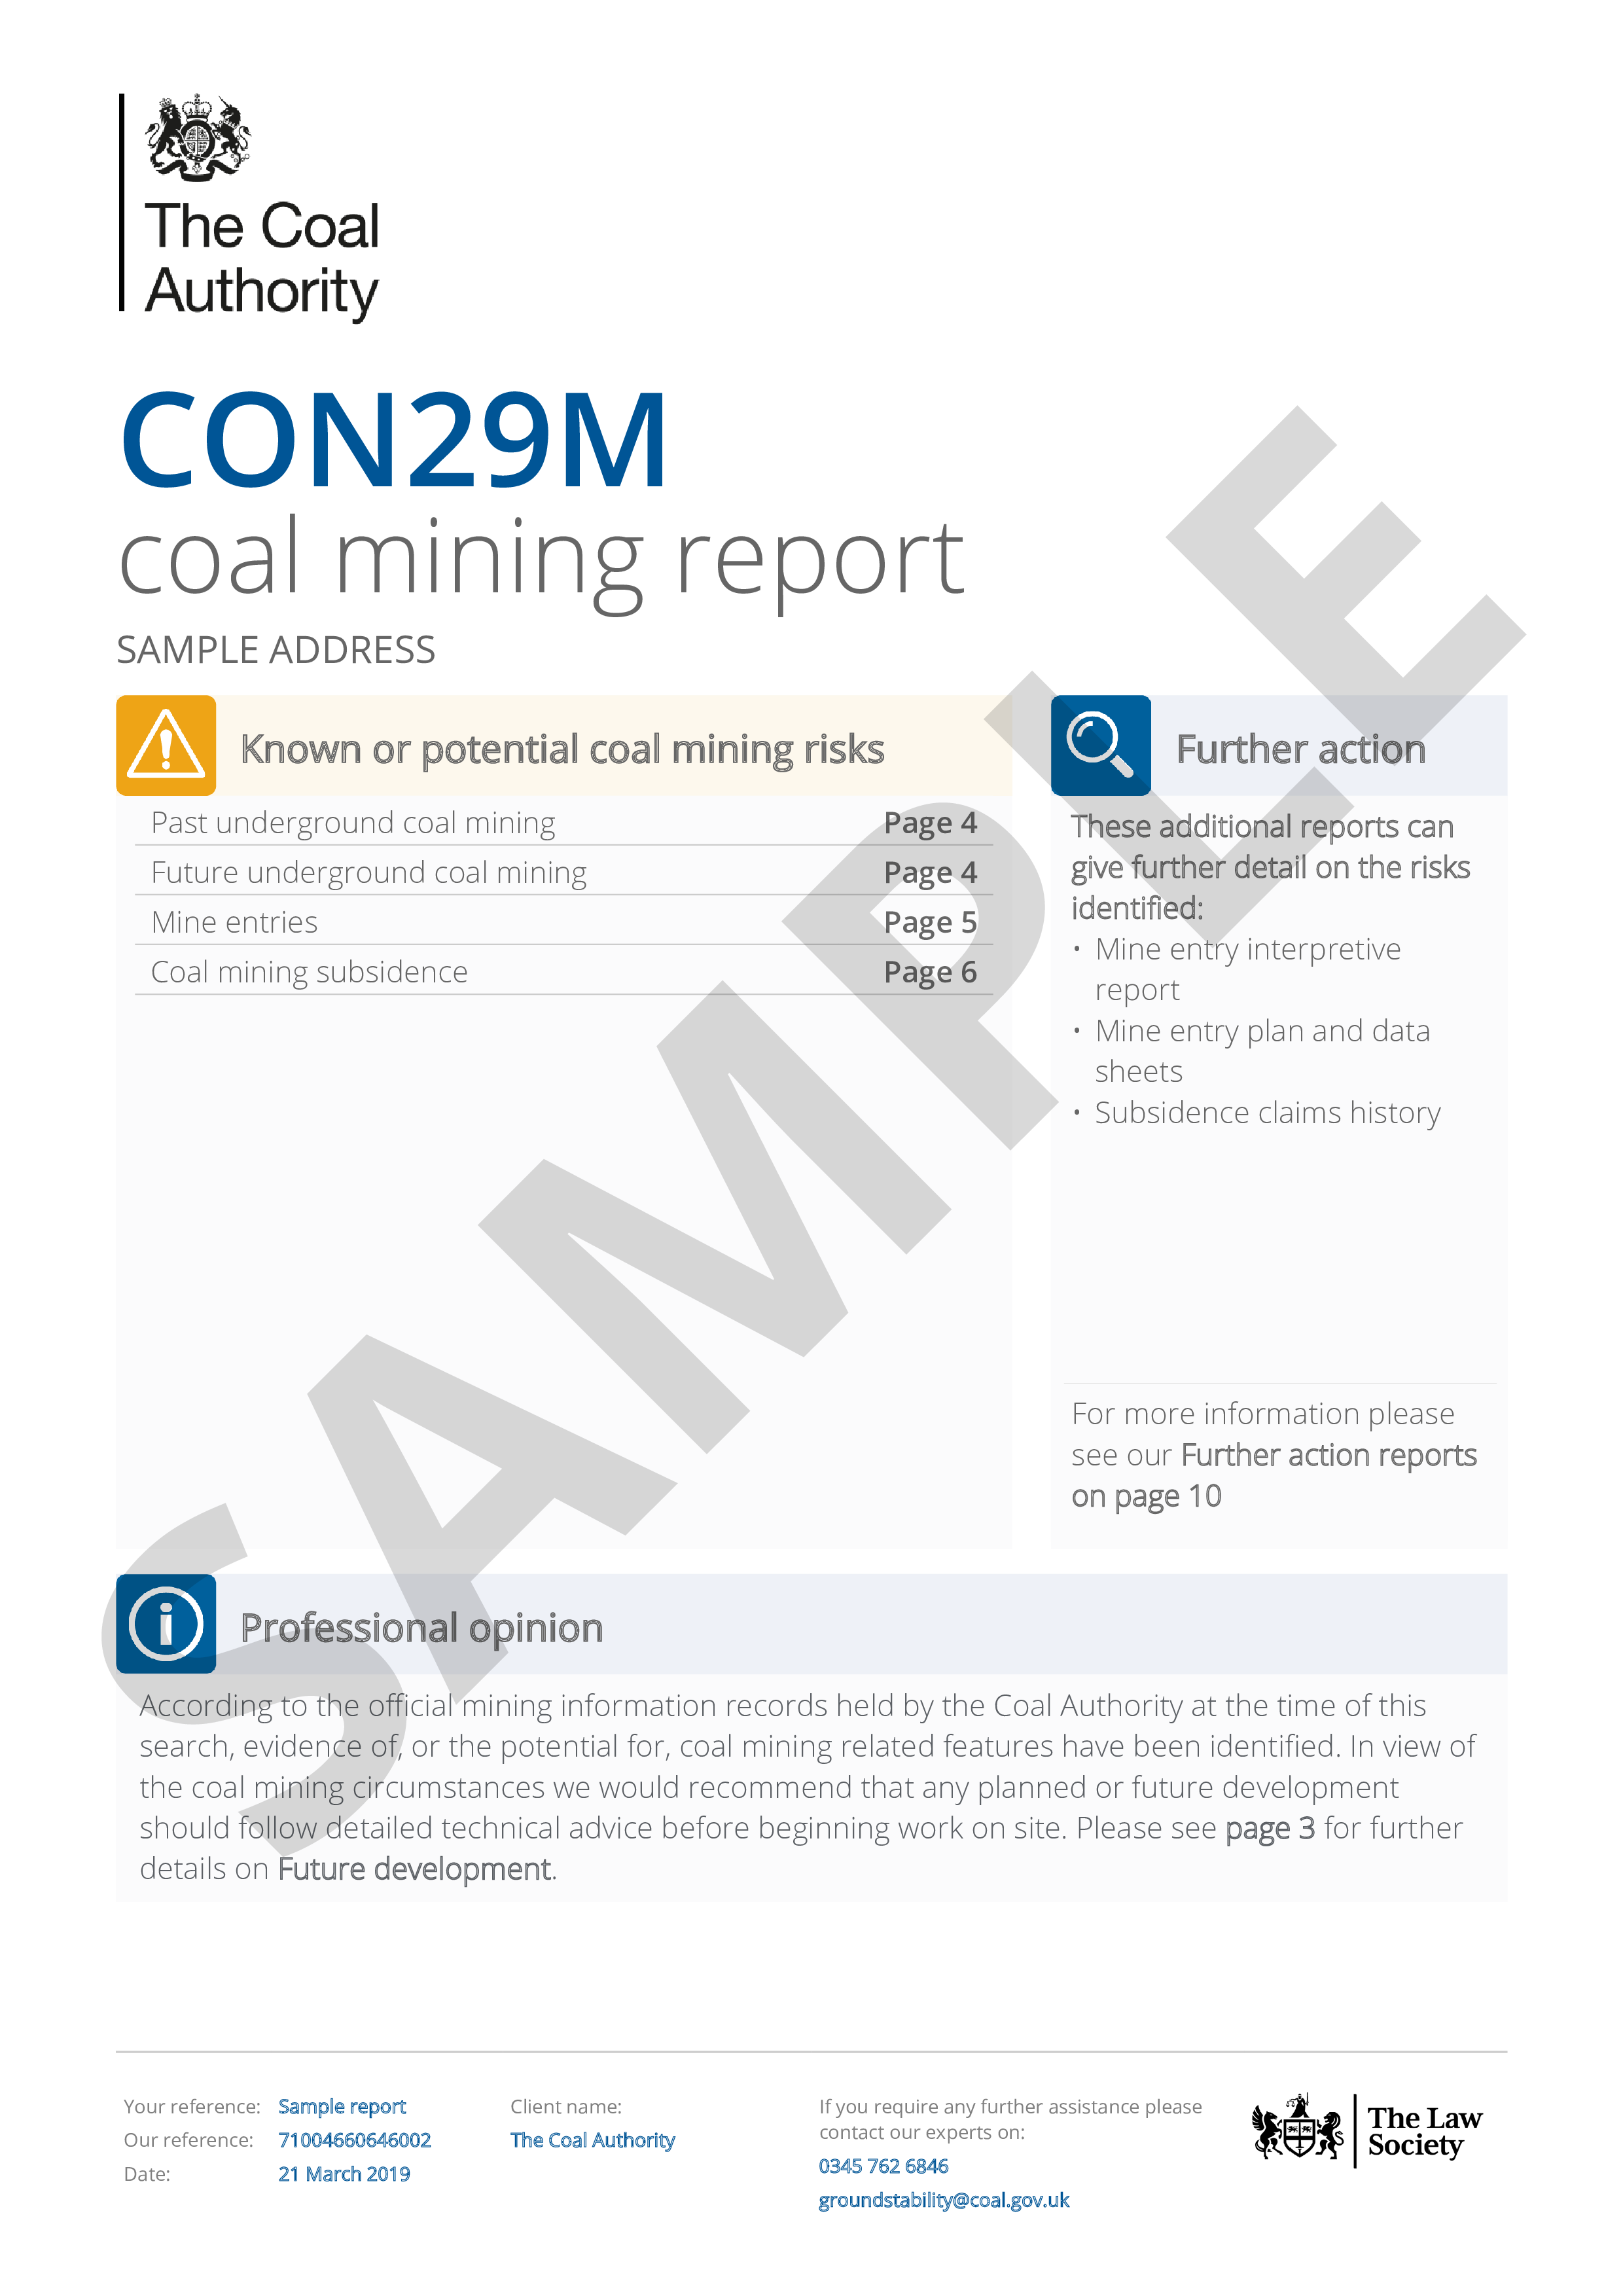 Coal Authority CON29M Report Image